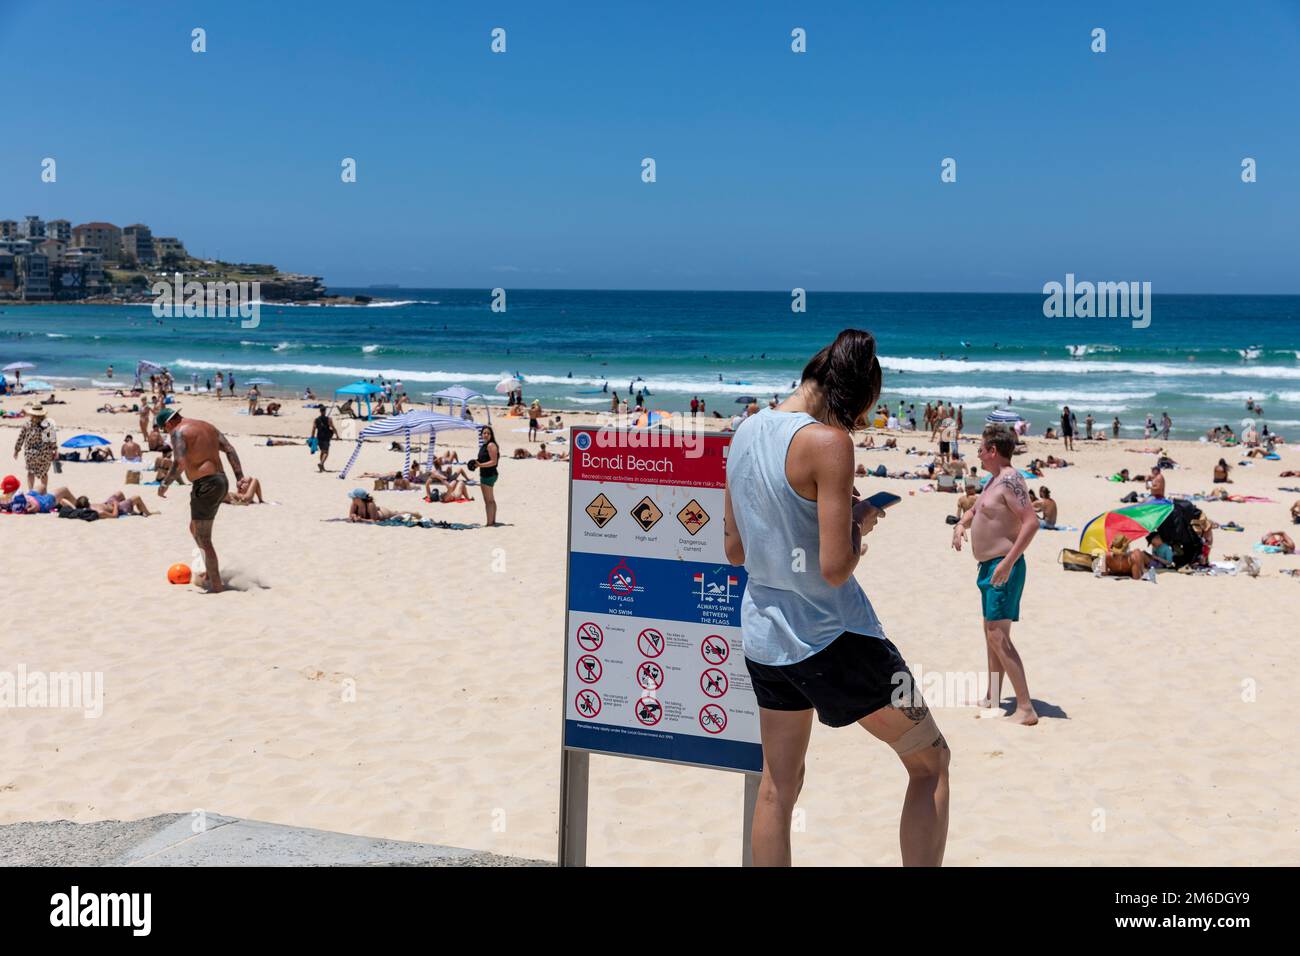 Bondi Beach Sydney 2023, jeune femme brune envoyant des SMS sur son téléphone mobile, des tatouages de jambe et de bras, se tenait à côté du panneau Bondi Beach, Sydney, Nouvelle-Galles du Sud, Australie Banque D'Images